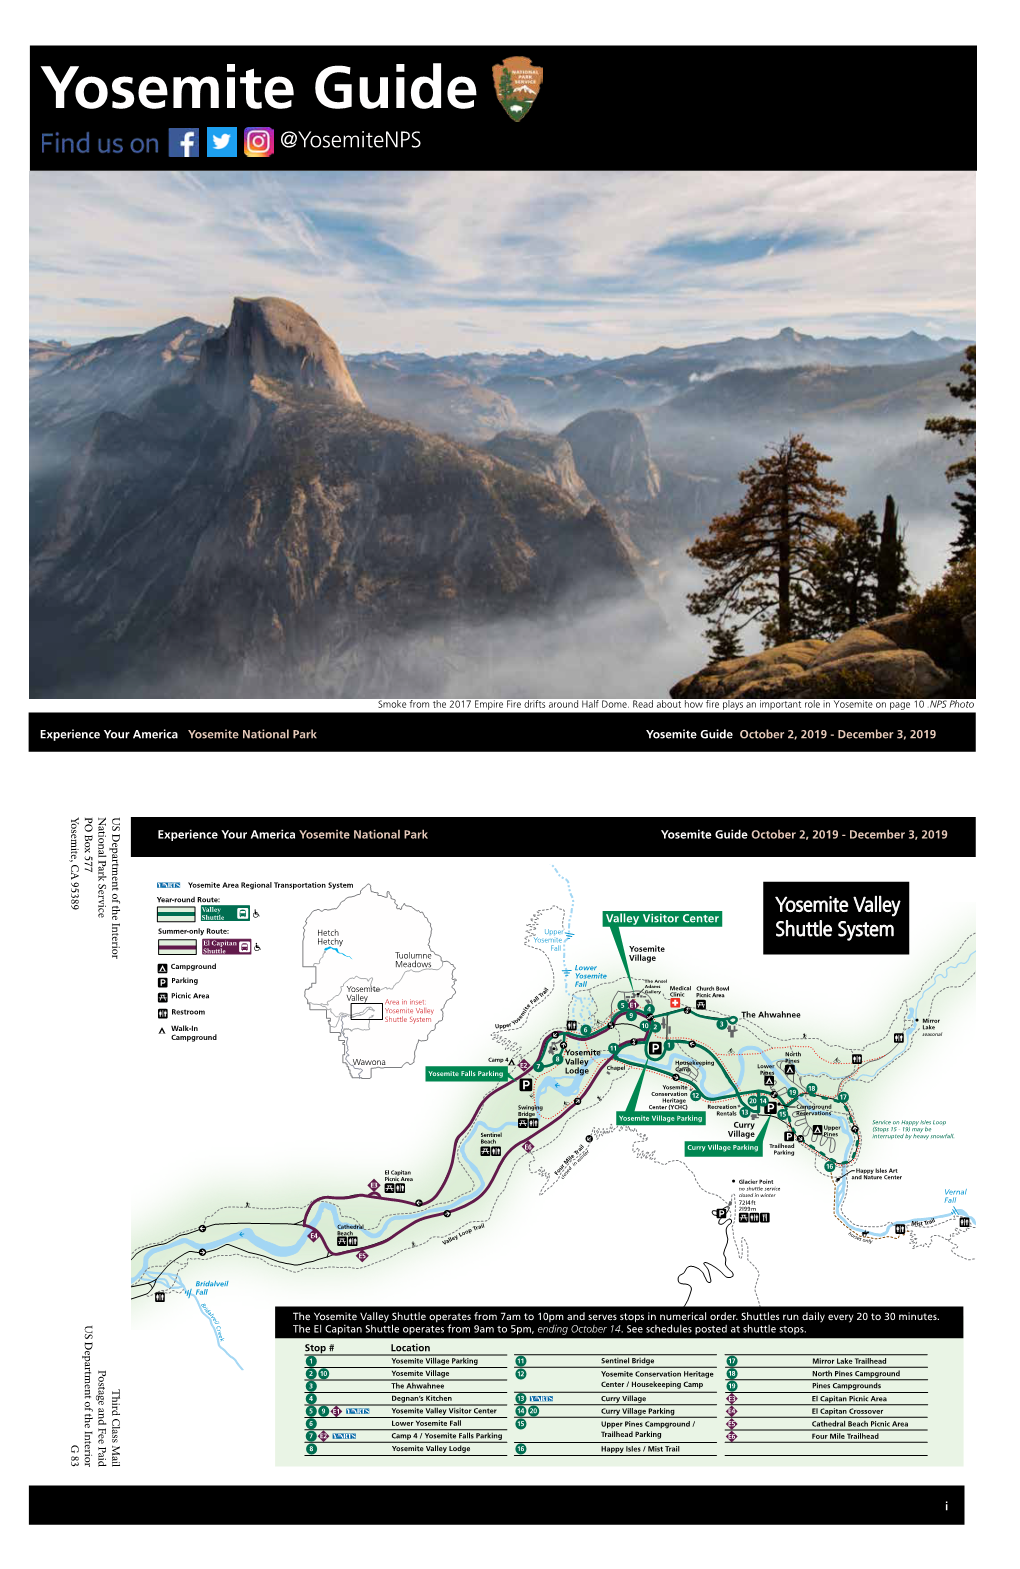 Yosemite Guide Yosemite Guide October 2, 2019 - December 3, 2019 @Yosemitenps